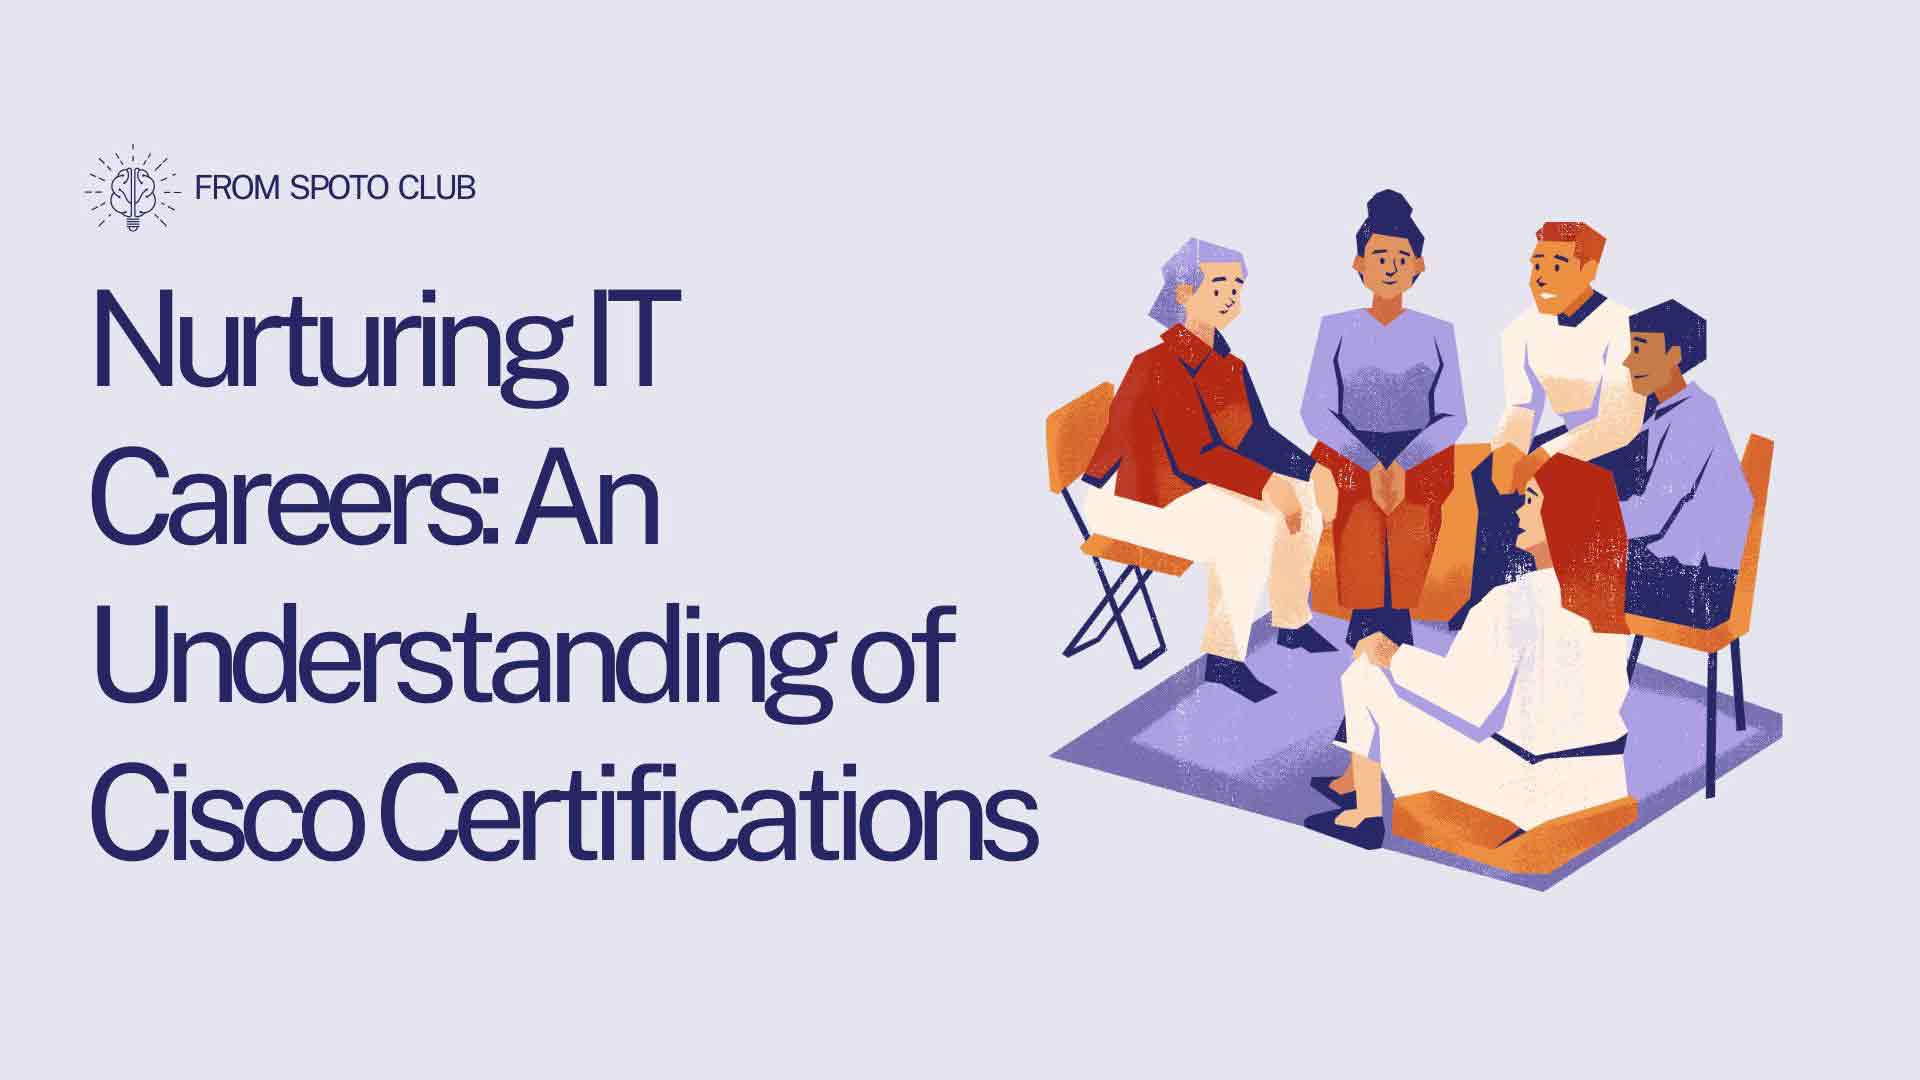 IT Careers: An Understanding of Cisco Certifications